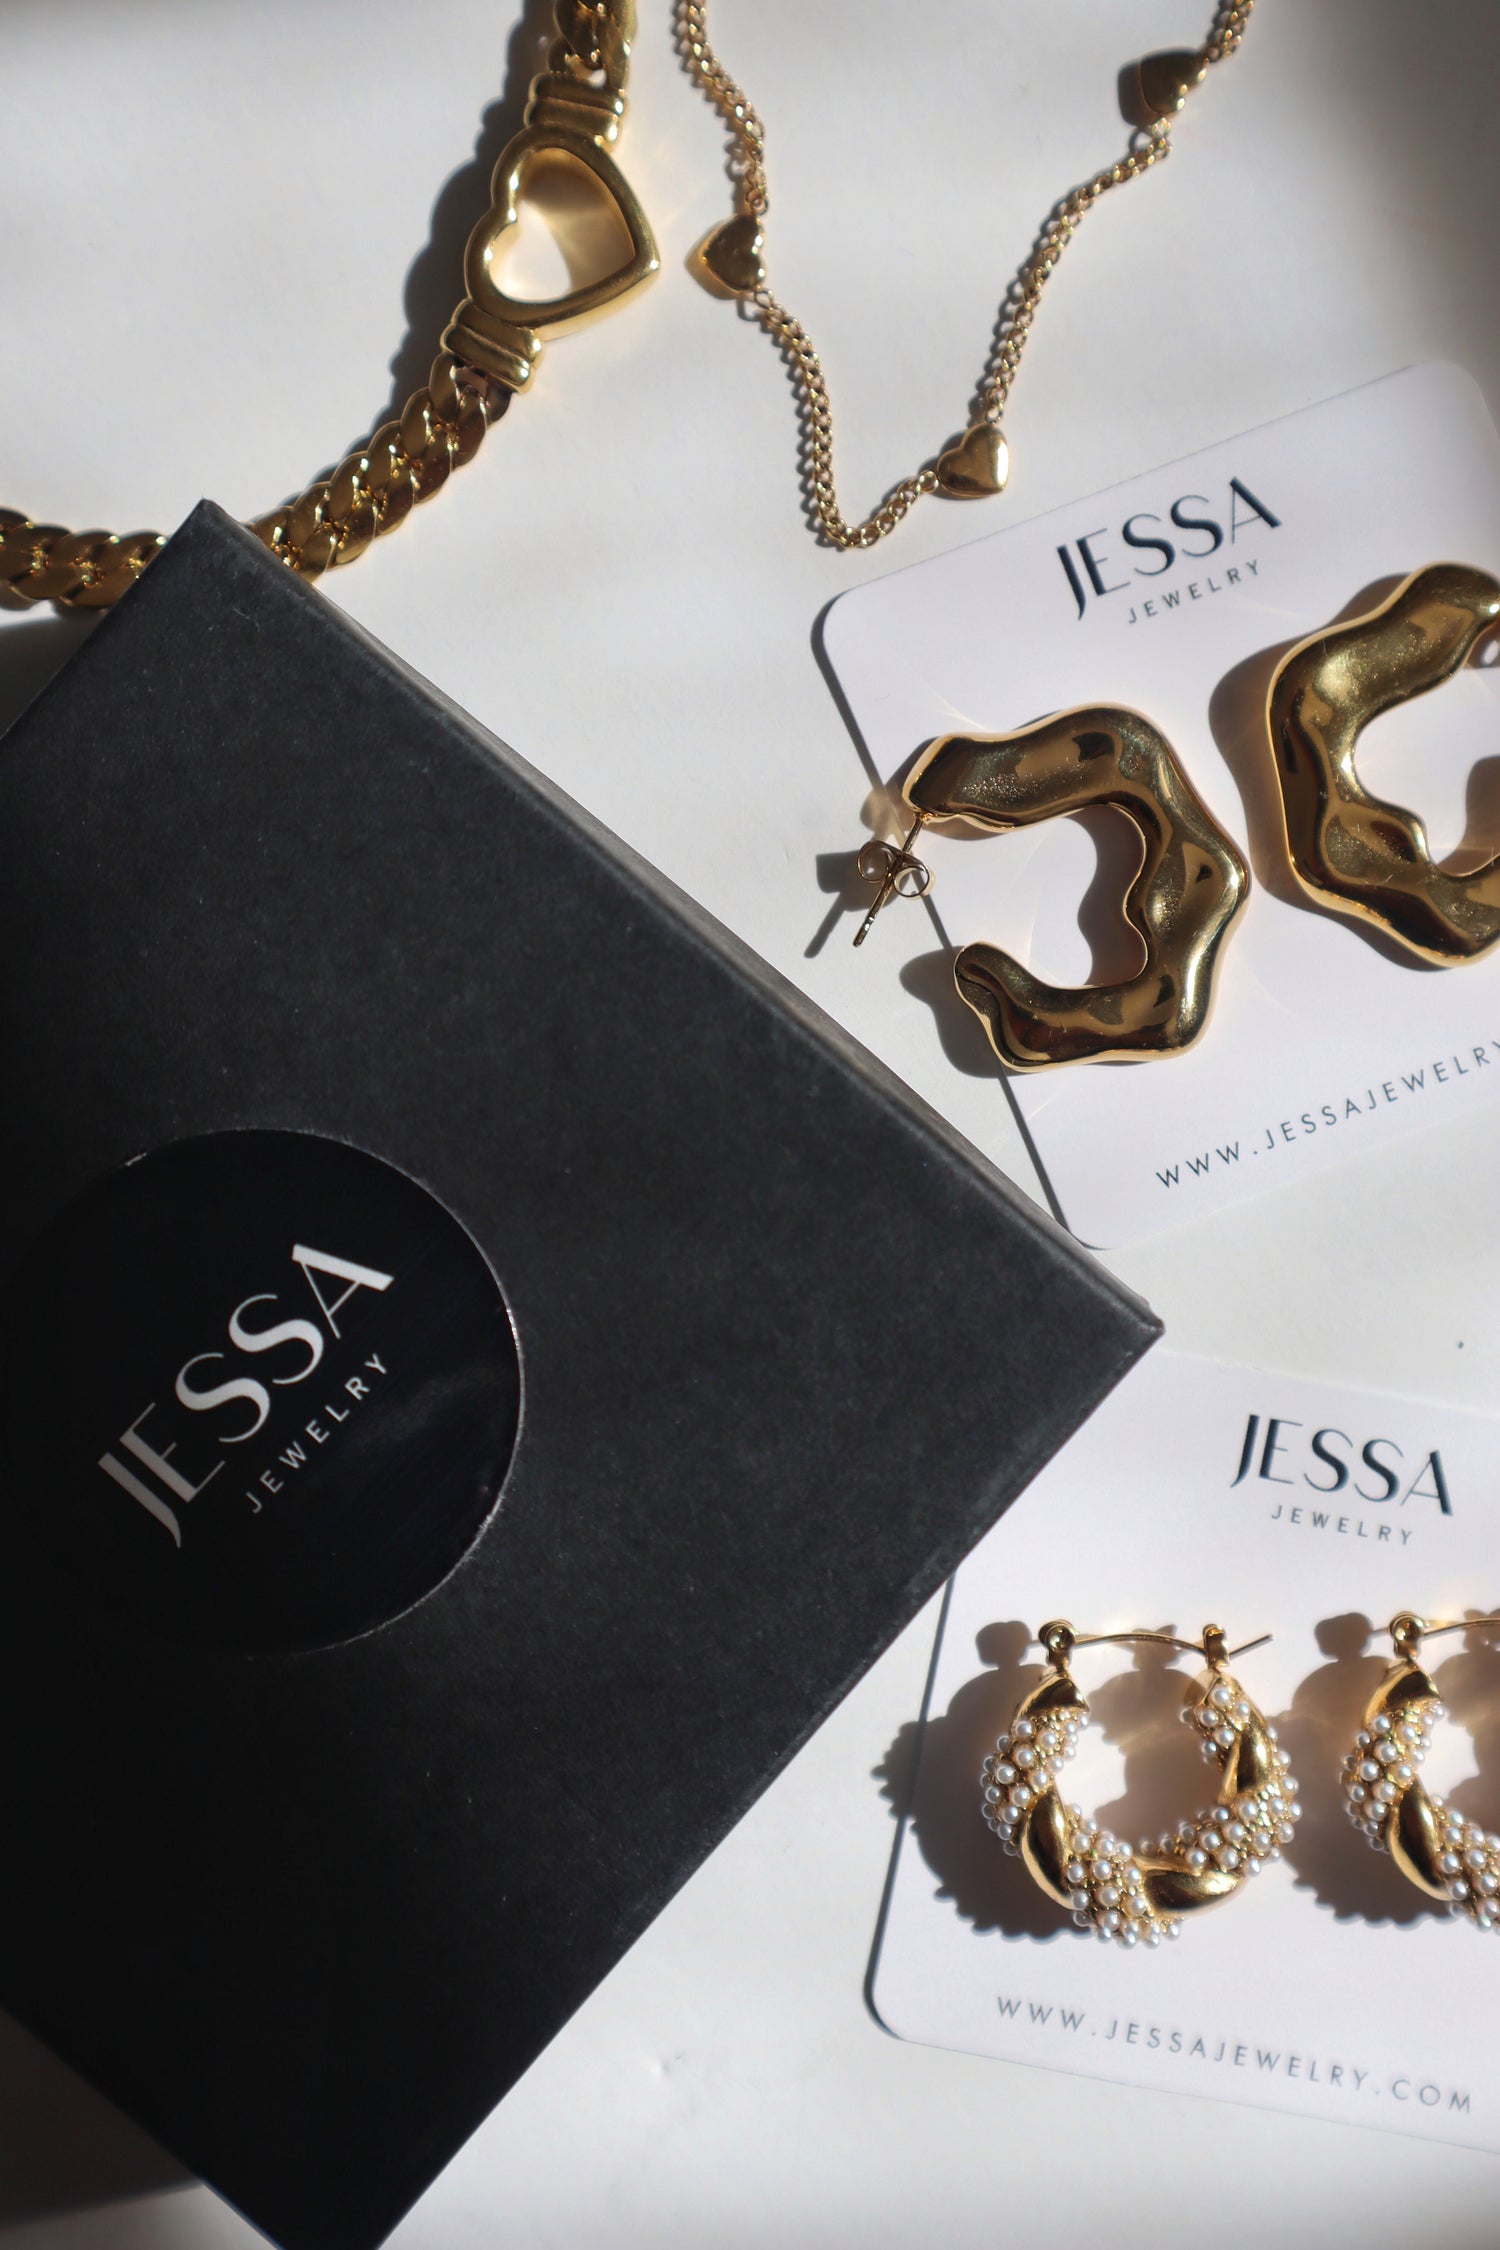 NEW ARRIVALS - JESSA JEWELRY | GOLD JEWELRY; earrings, rings, necklaces, jewelry storage; gold jewelry for everyday wear, minimalistic jewelry